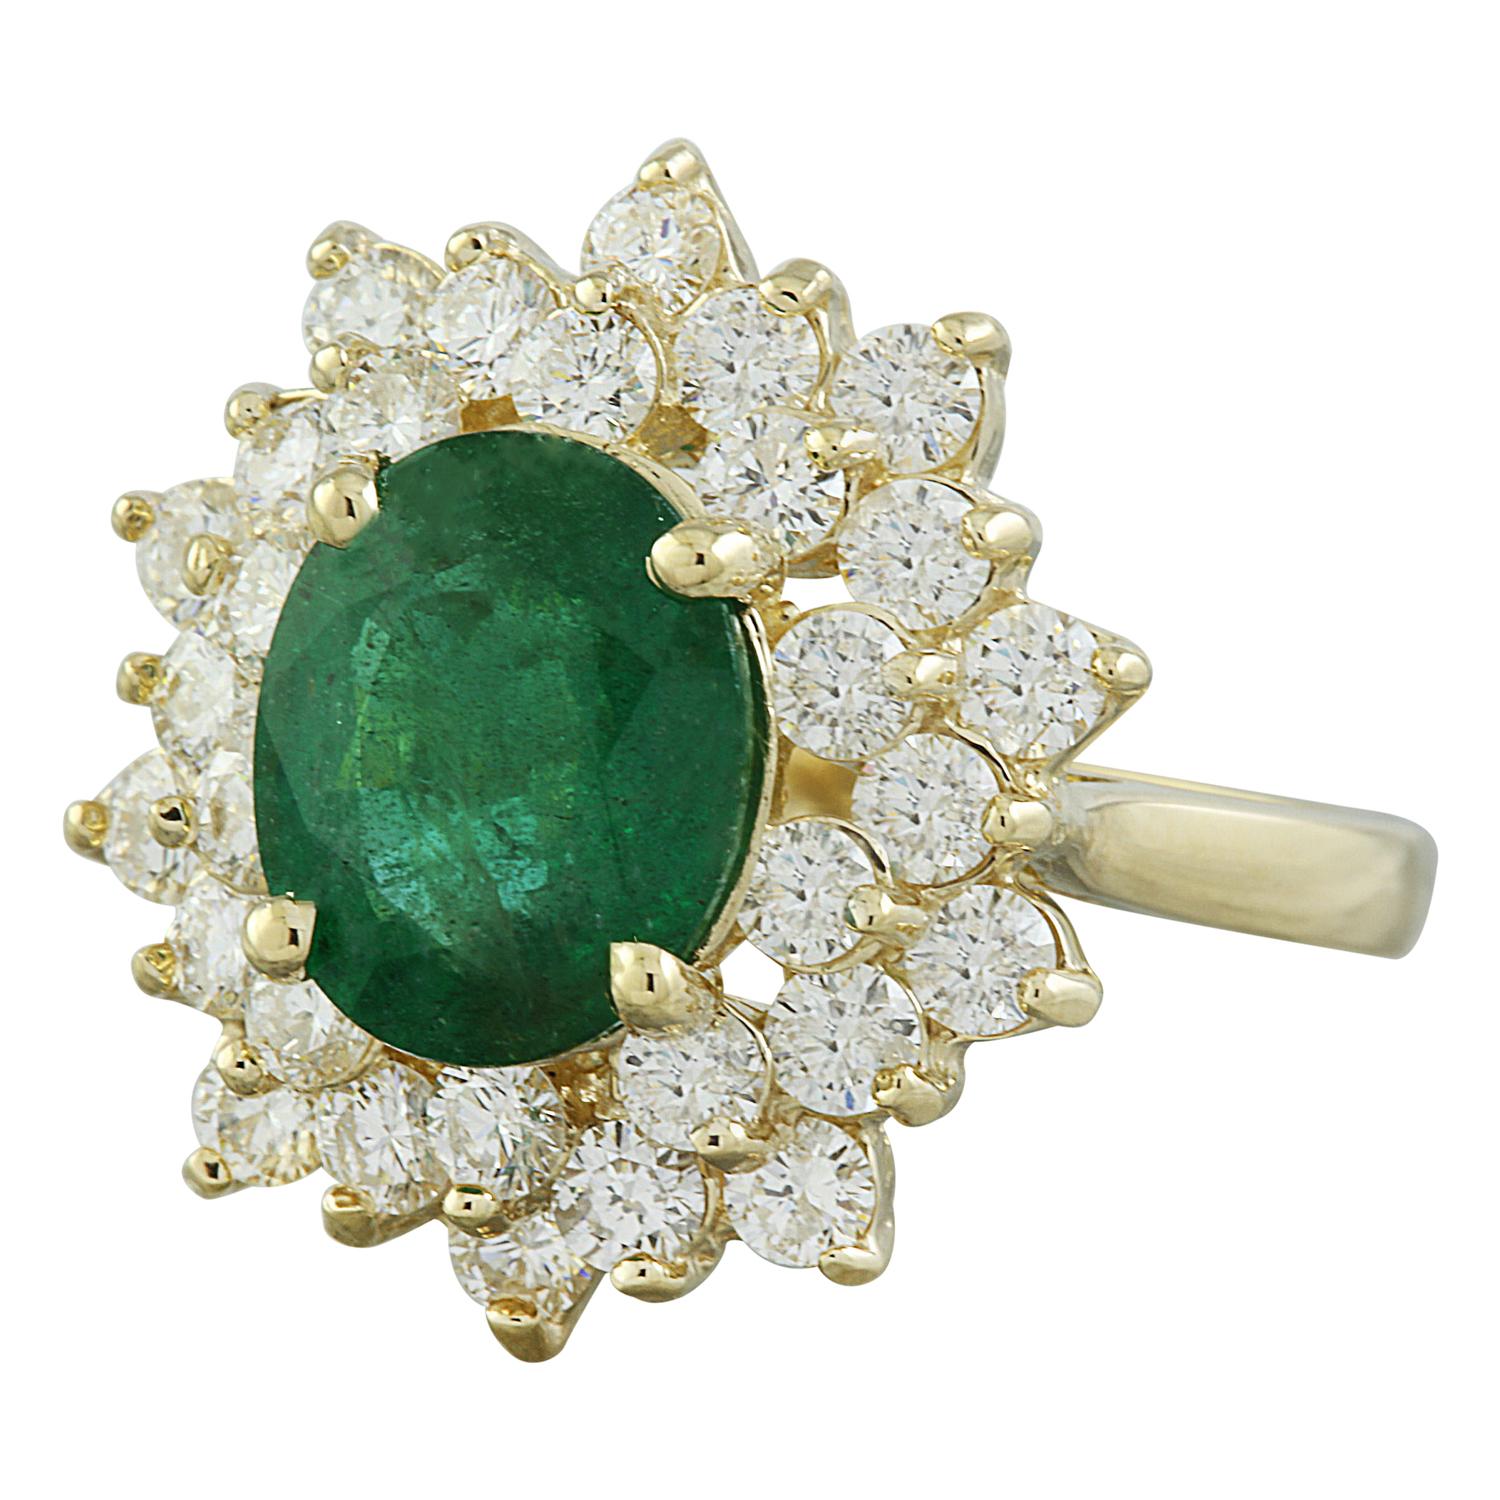 Wir präsentieren unseren opulenten natürlichen Smaragd-Diamantring, der sorgfältig in luxuriösem 14-karätigem Gelbgold gefertigt wurde. Dieses exquisite Stück ist eine wahre Verkörperung von Eleganz und Raffinesse und wird bestimmt ein geschätztes